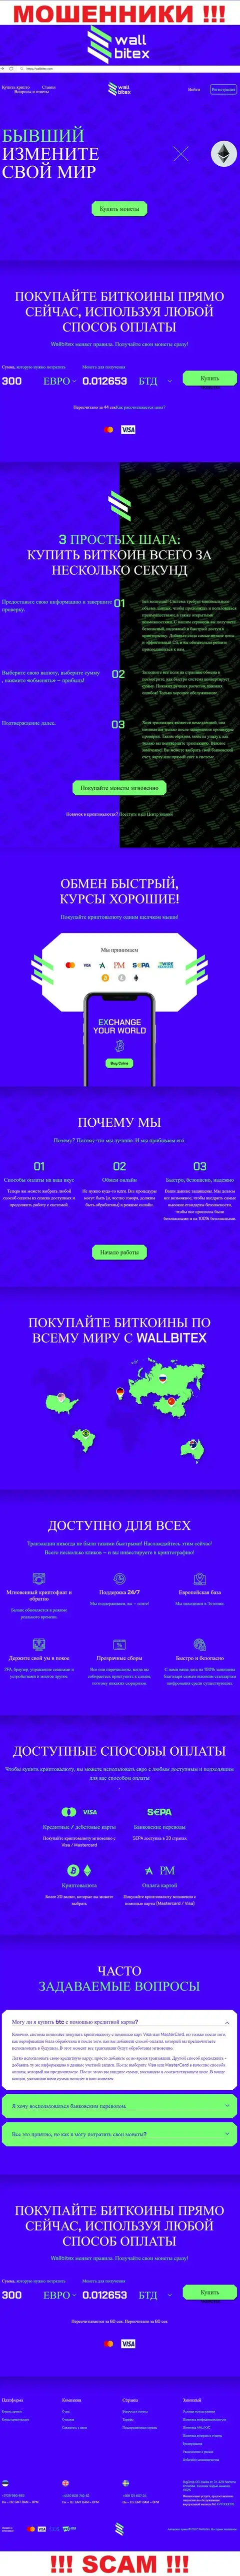 WallBitex Com - это официальный веб-сайт противозаконно действующей организации WallBitex Com